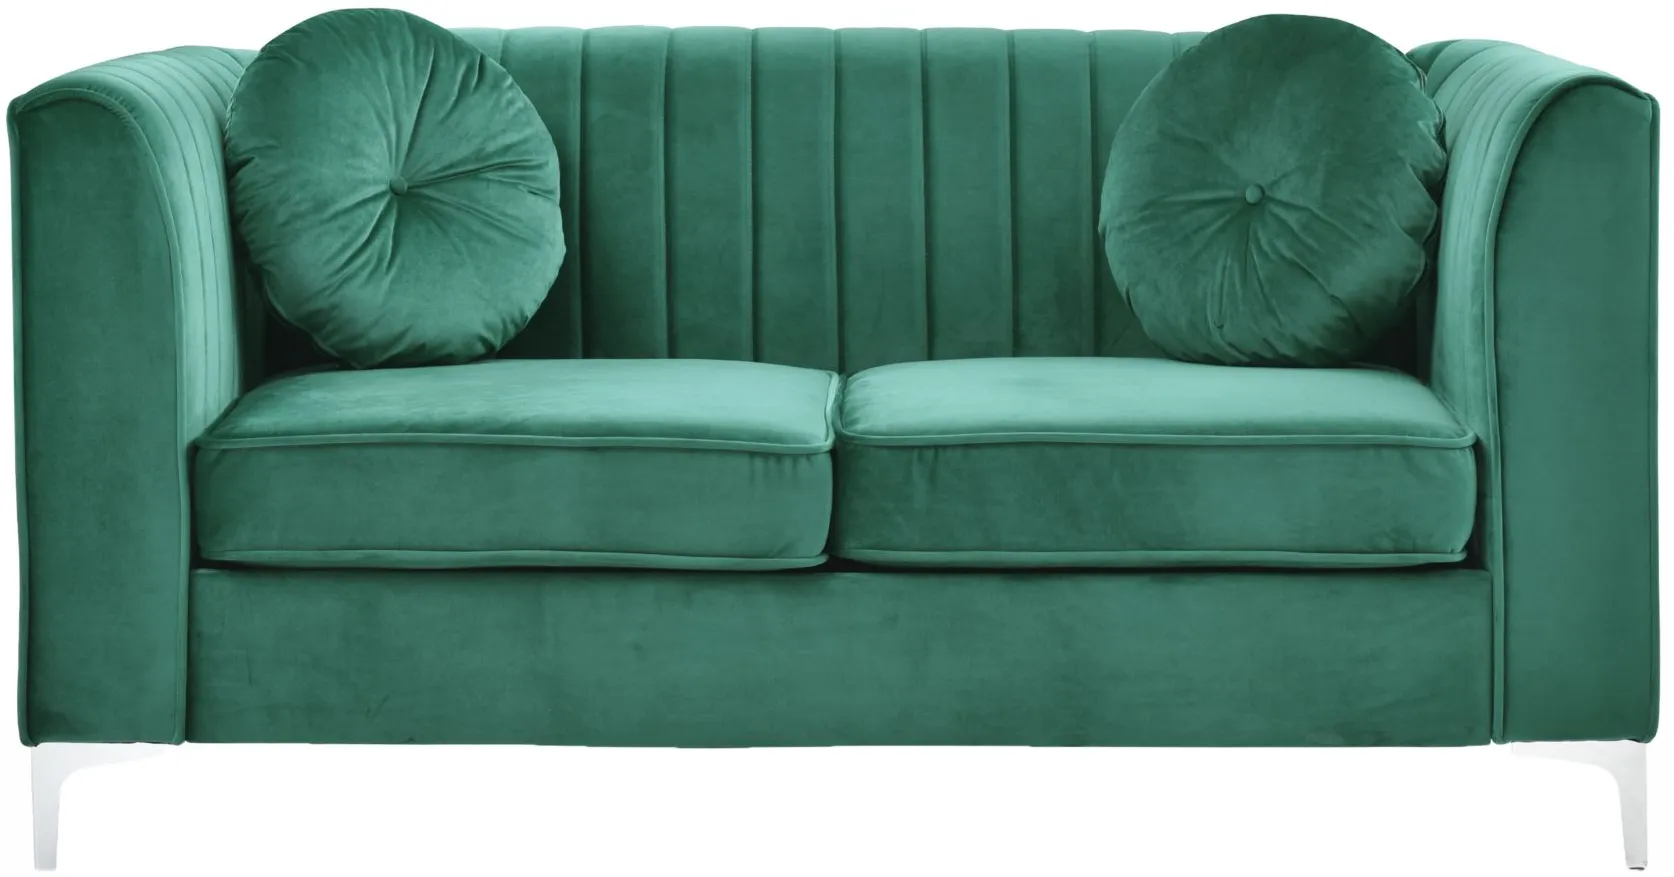 Deltona Loveseat in Green by Glory Furniture